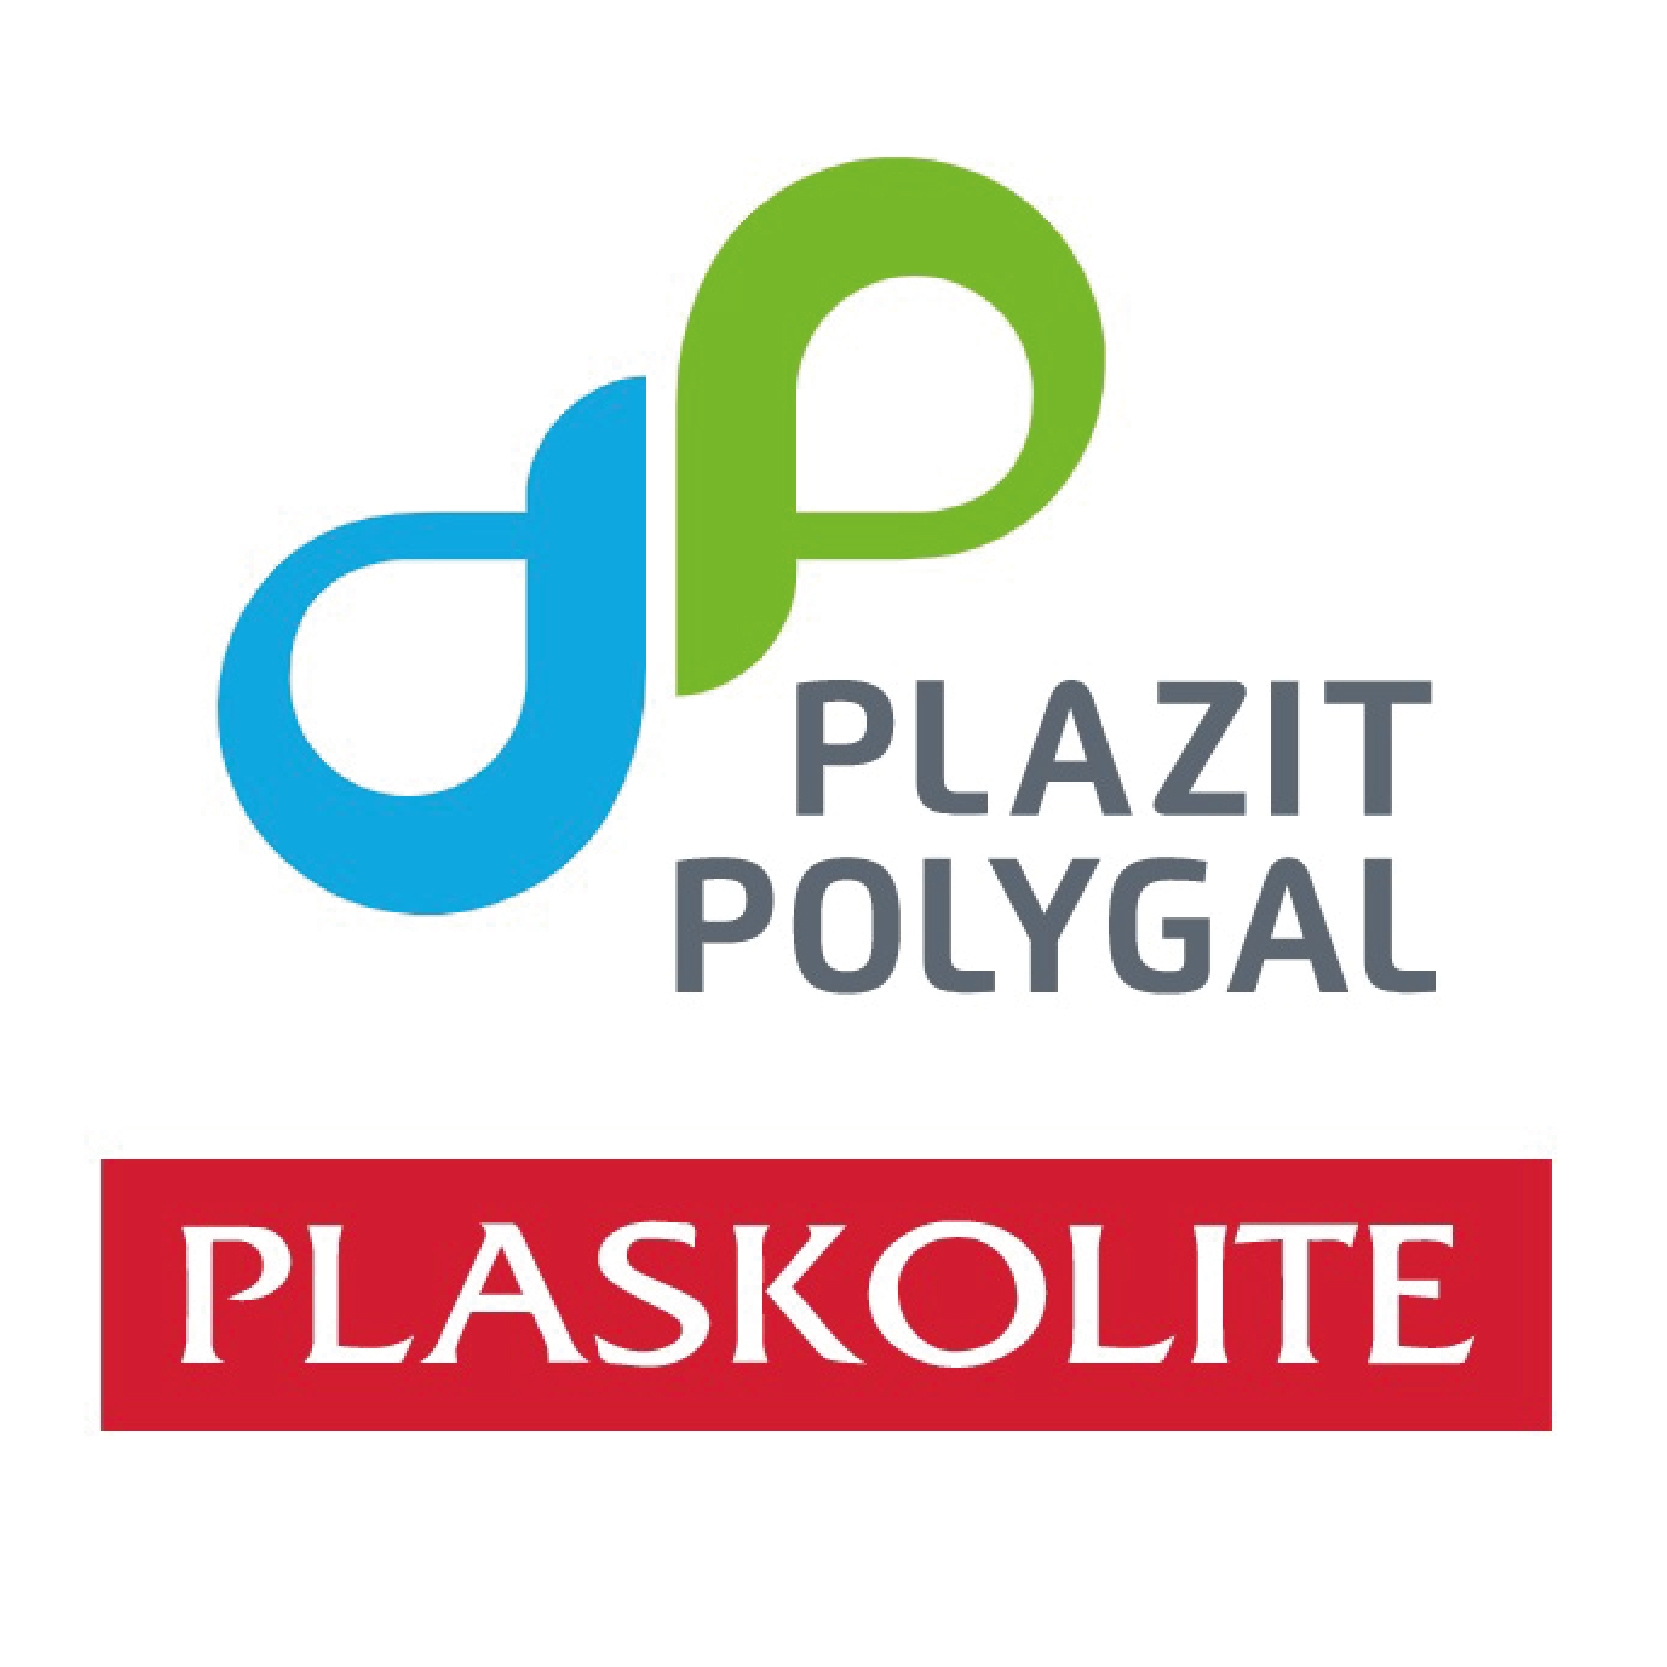 Polygal, es parte de la familia Plaskolite.. Te contamos la novedades